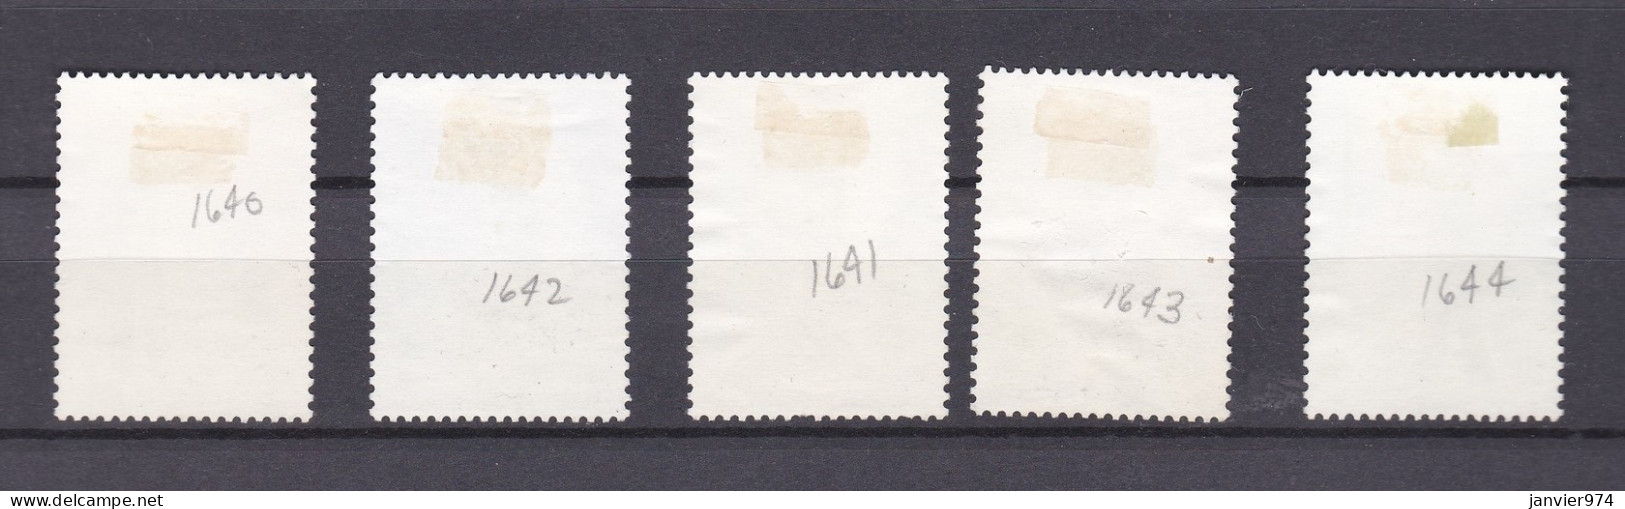 Chine 1980, Anniversaire Du Retour De La Chine Au CIO, La Serie Complète 1651 à 1655, 5 Timbres, Voir Scan Recto Verso - Used Stamps